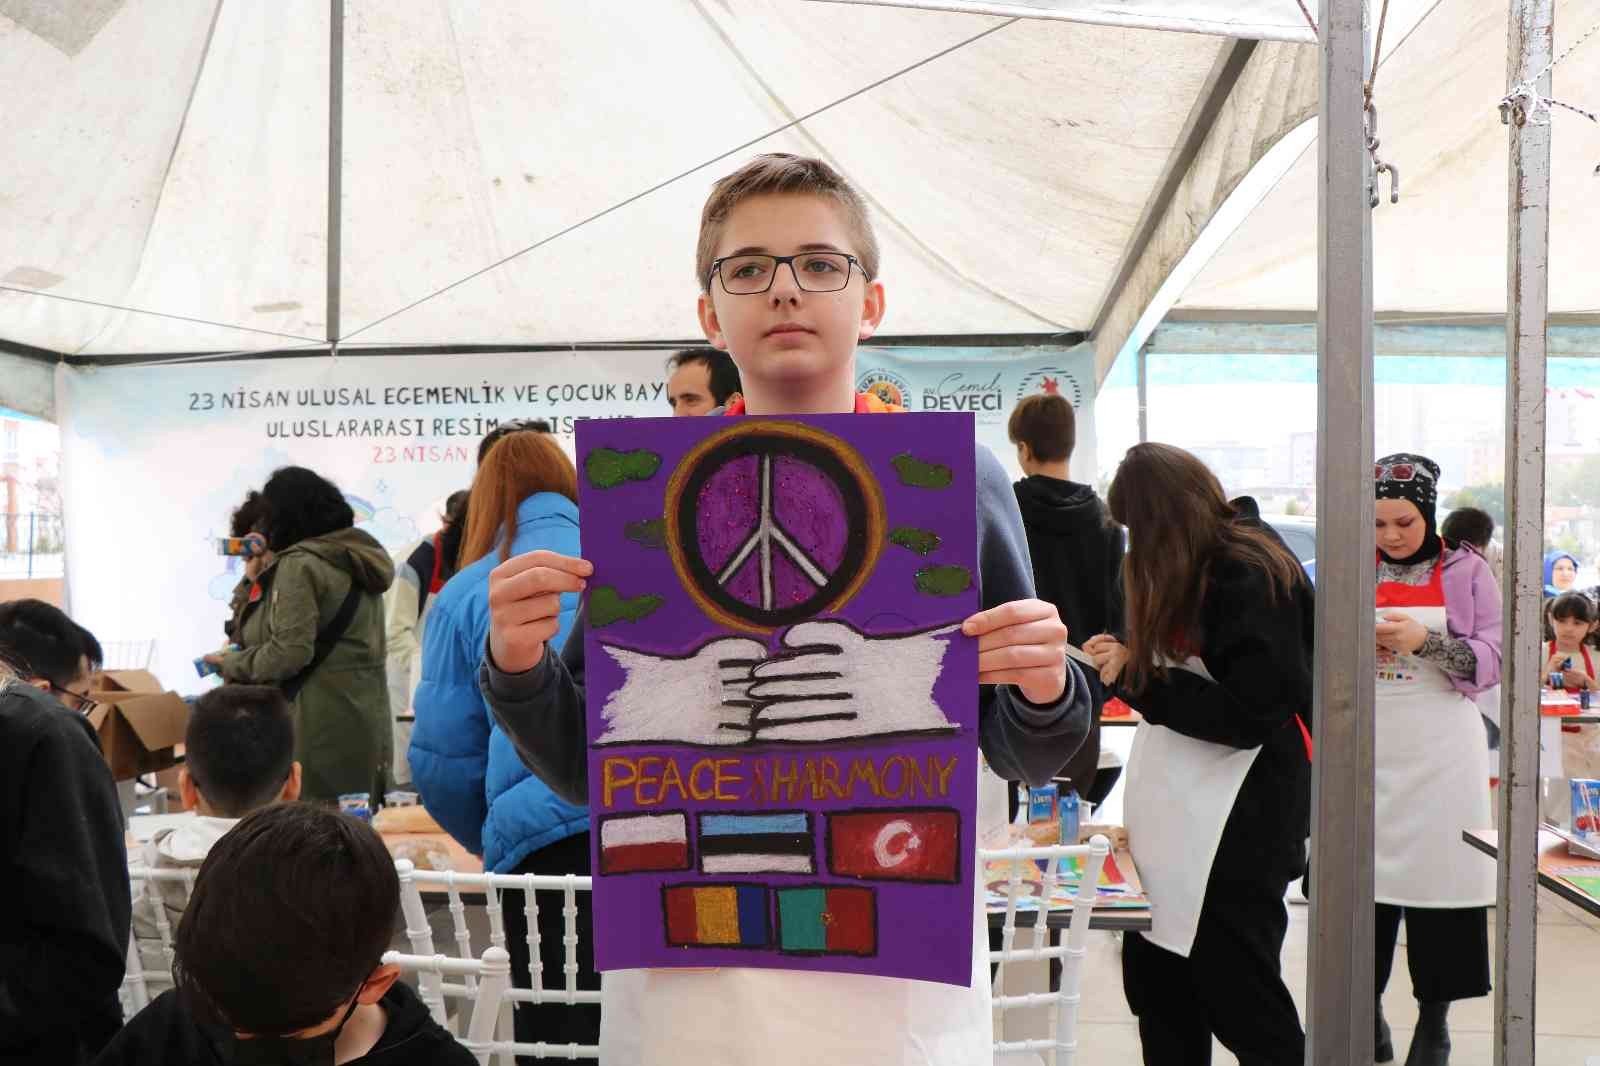 5 ülkeden gelen çocuklar barışın resmini çizdi
